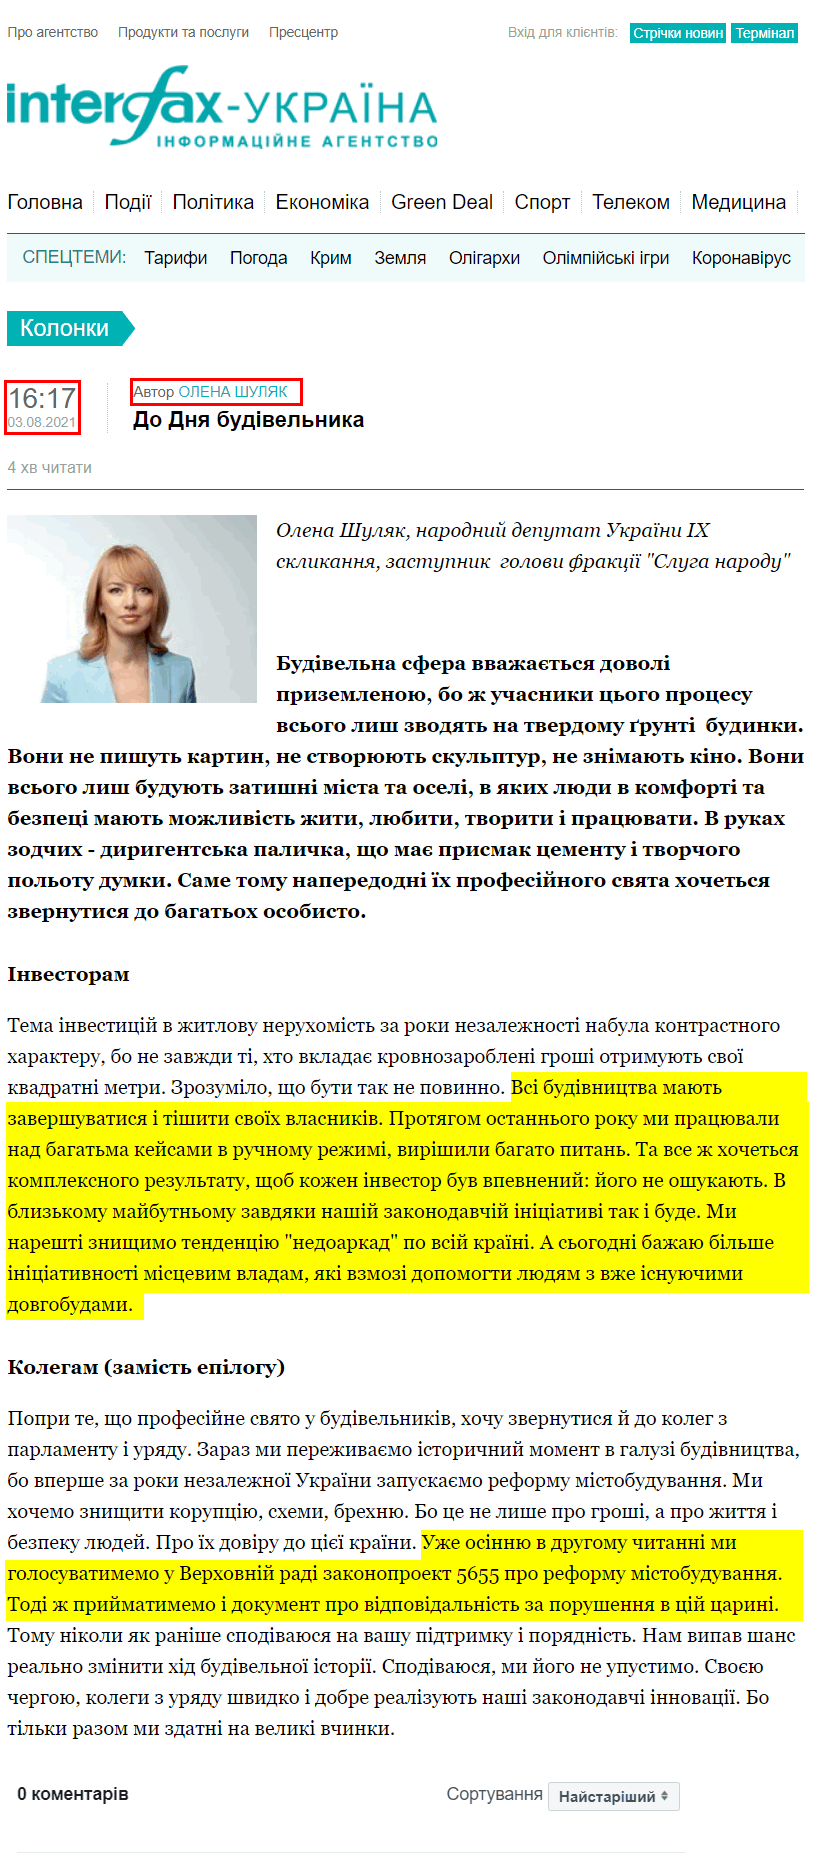 https://ua.interfax.com.ua/news/blog/759332.html